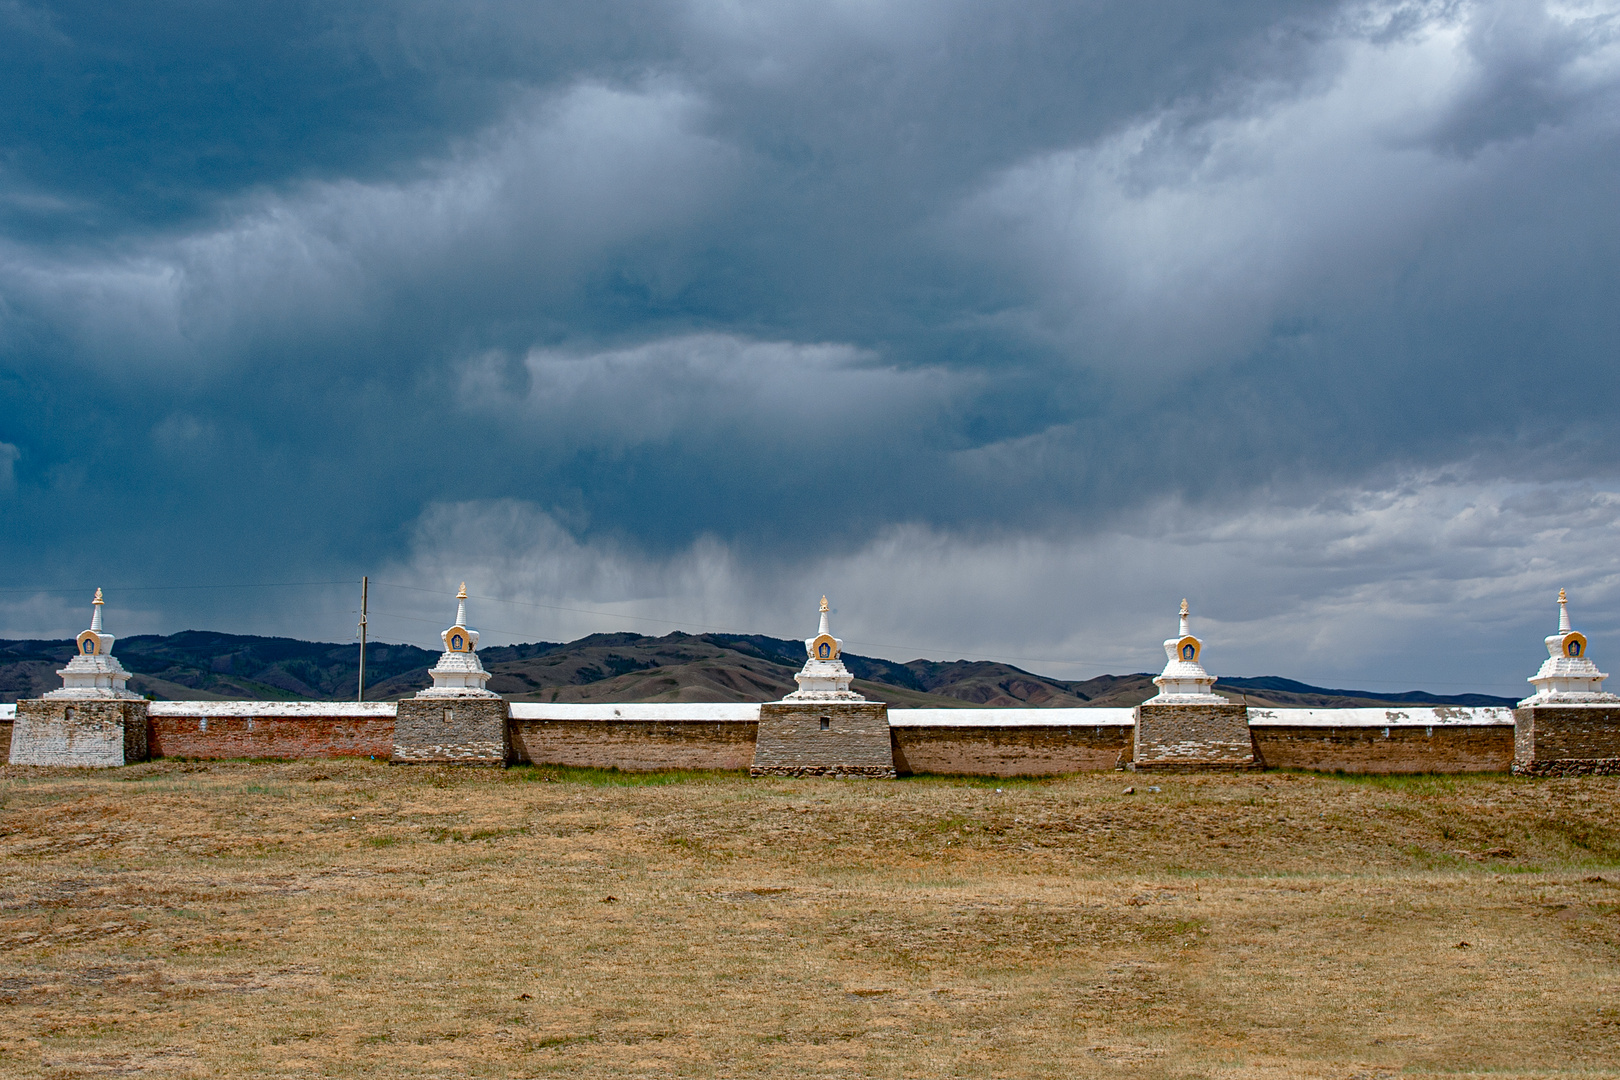 Karakorum - mysterious ruins in Mongolia